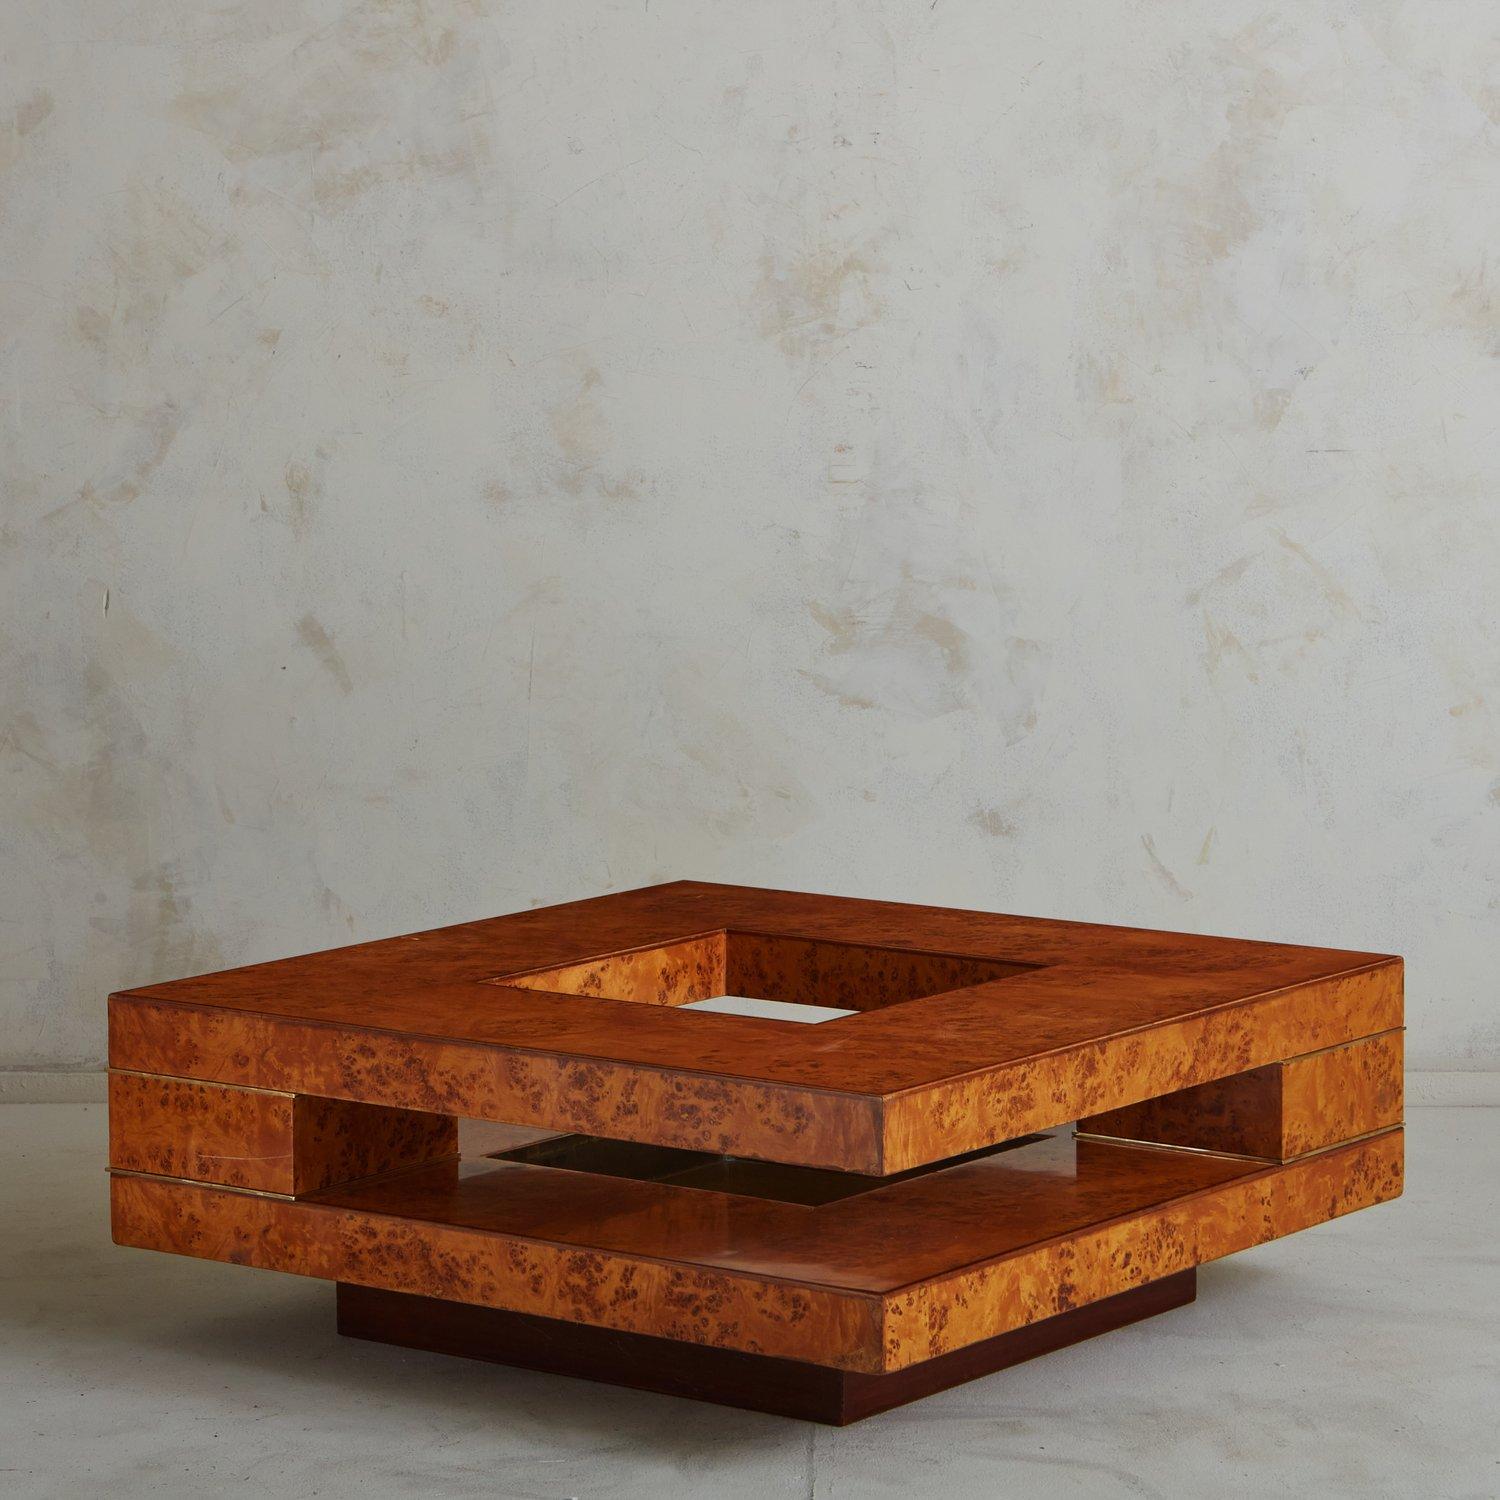 Table basse sculpturale des années 1970 attribuée à Willy Rizzo. Cette table présente un placage en ronce laquée avec de magnifiques veinures et de subtils détails en laiton. Il est doté d'un plateau à deux niveaux avec des découpes sur les côtés et